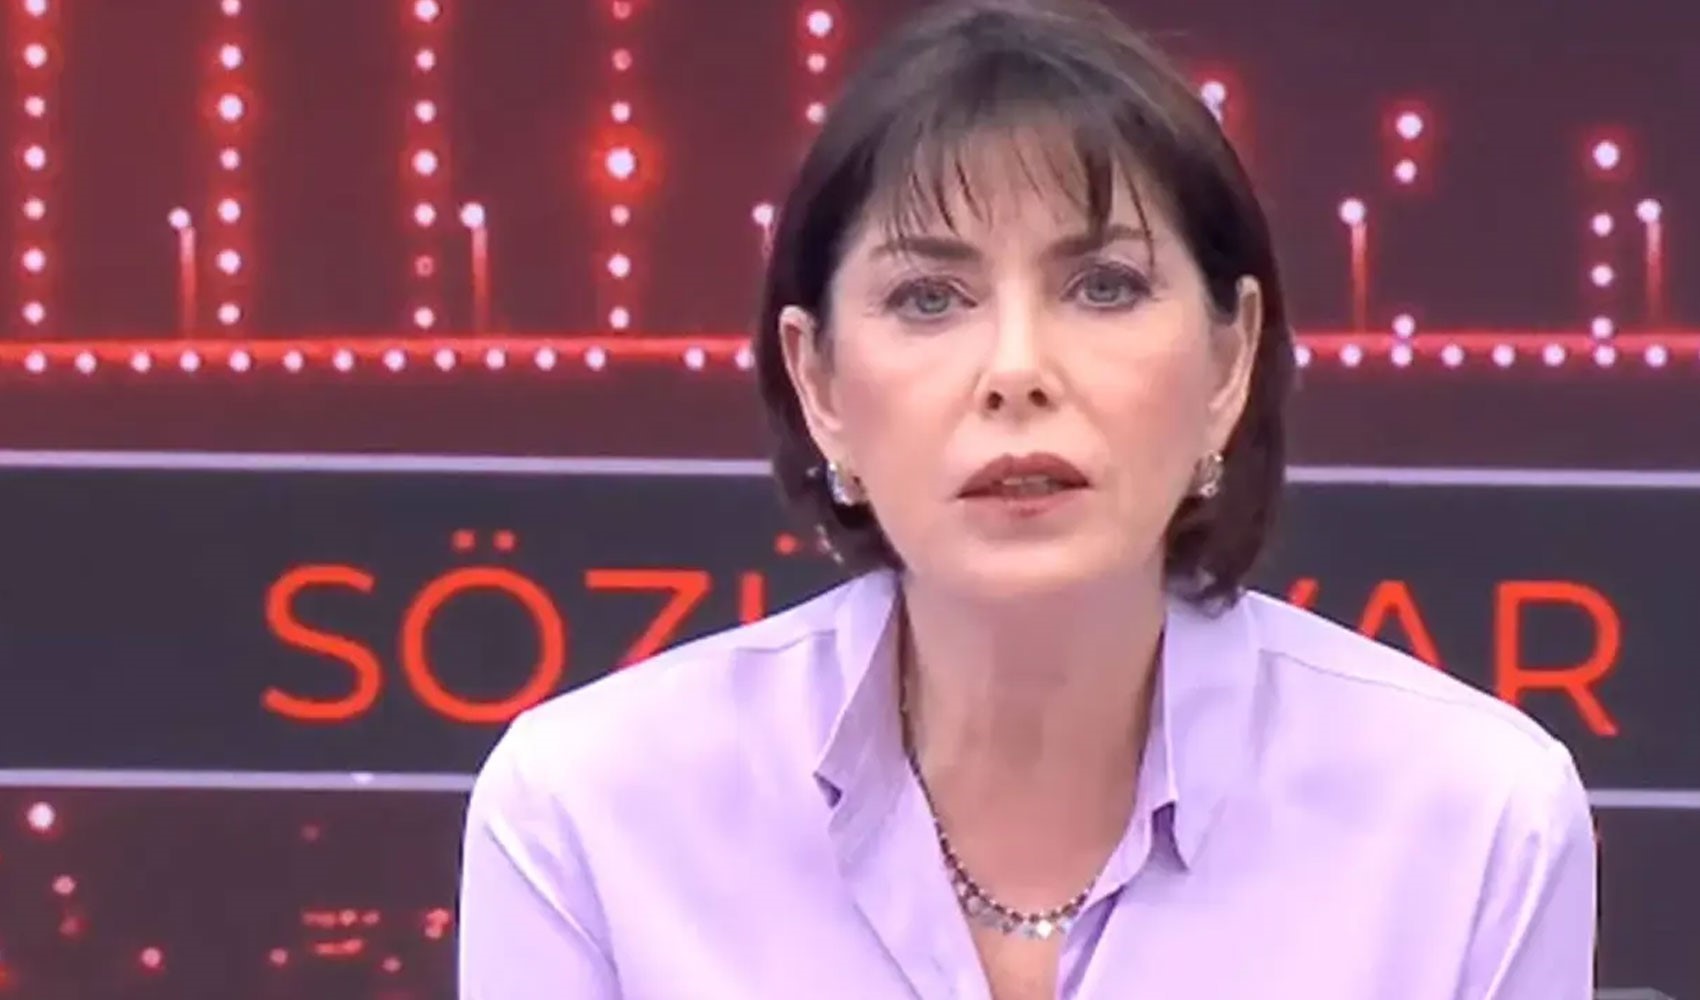 Şirin Payzın Halk TV'den ayrıldığını açıkladı